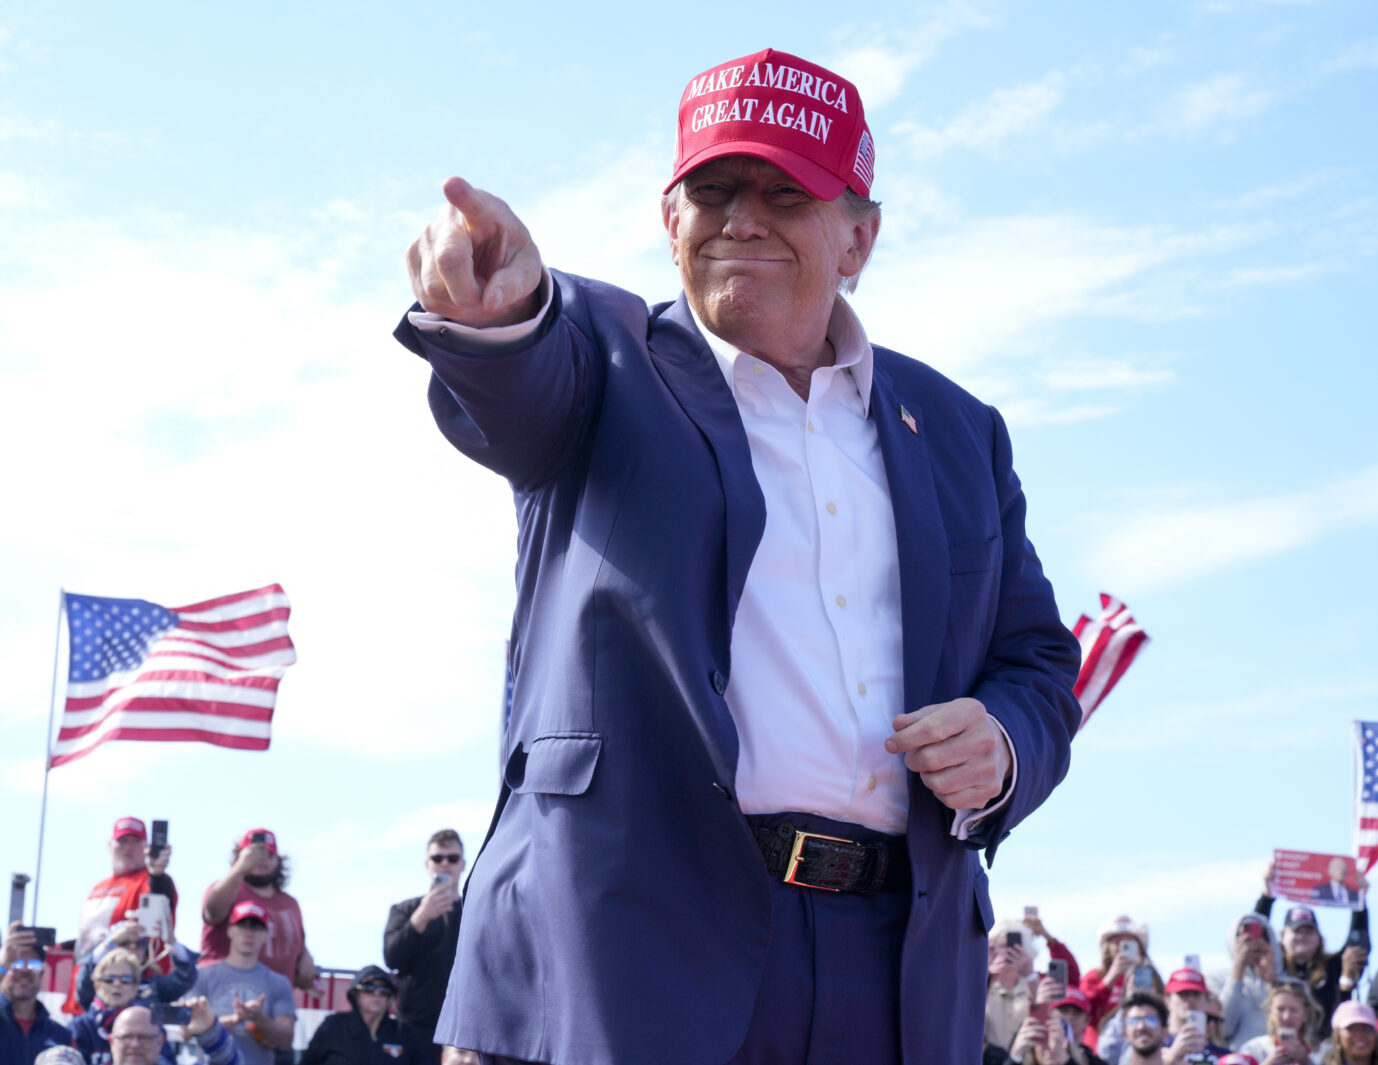 Lügenpresse? Donald Trump bei der Wahlkampfveranstaltung in Ohio, wo er von einem drohenden „Blutbad“ für die Autoindustrie sprach.